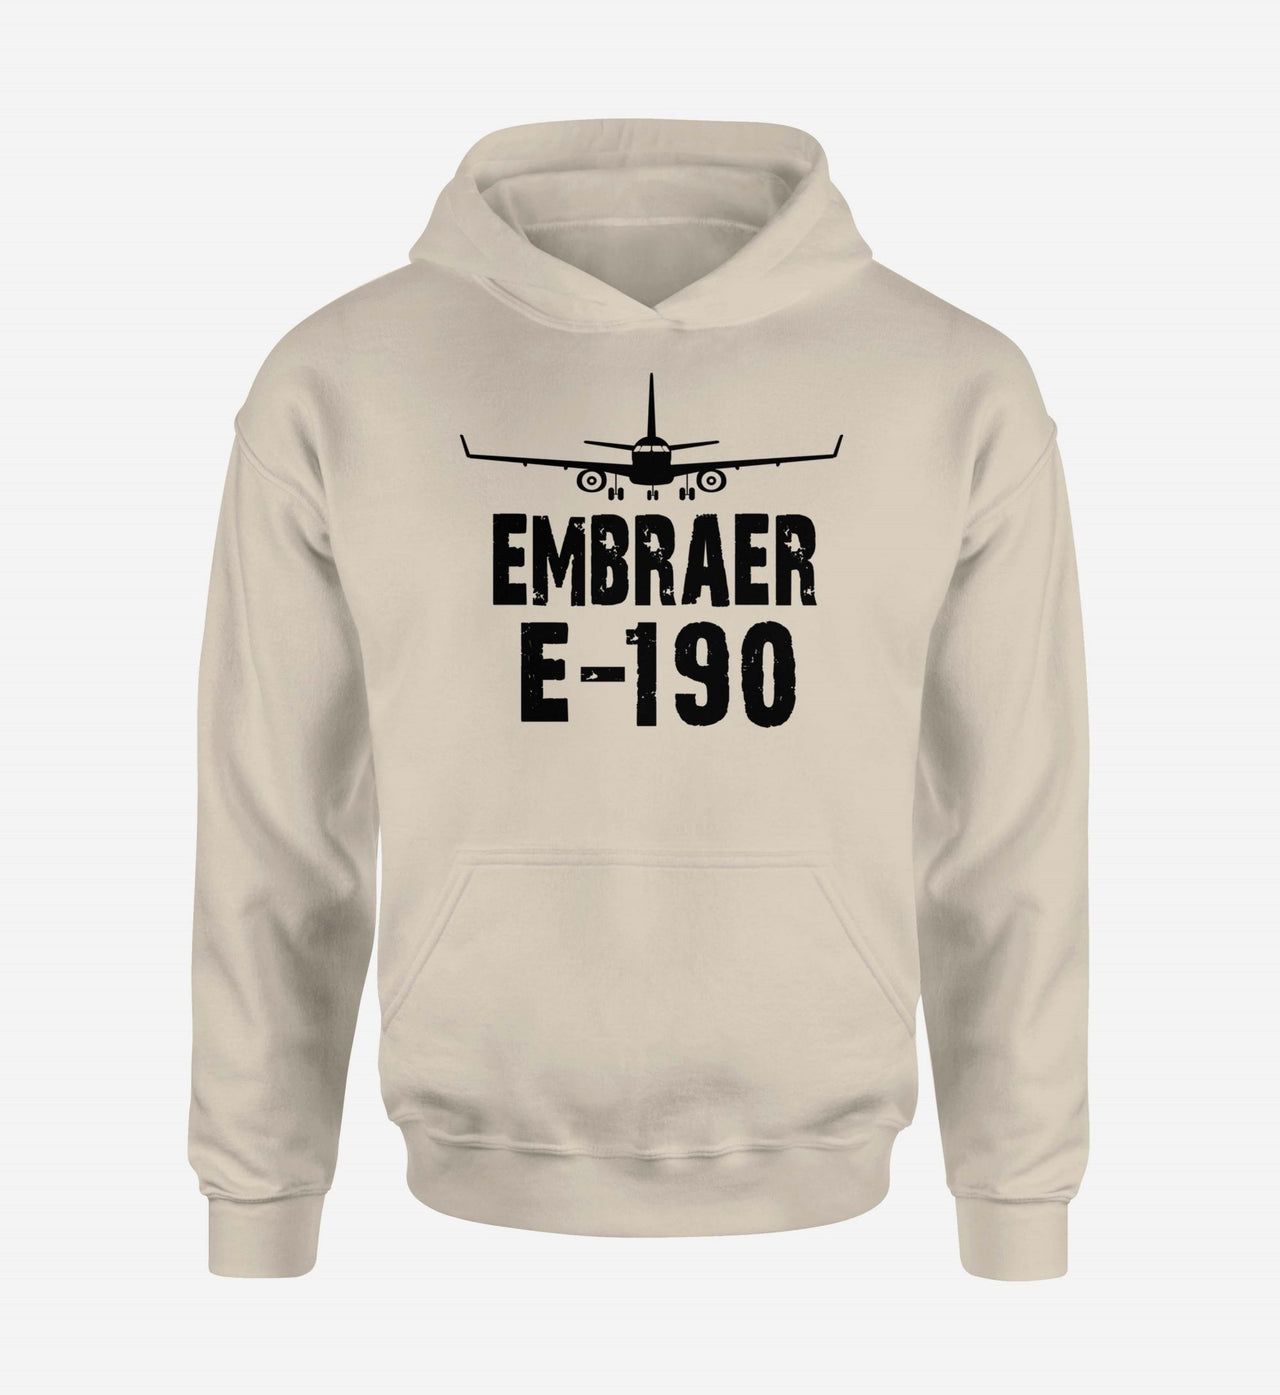 Embraer E-190 & Plane Designed Hoodies